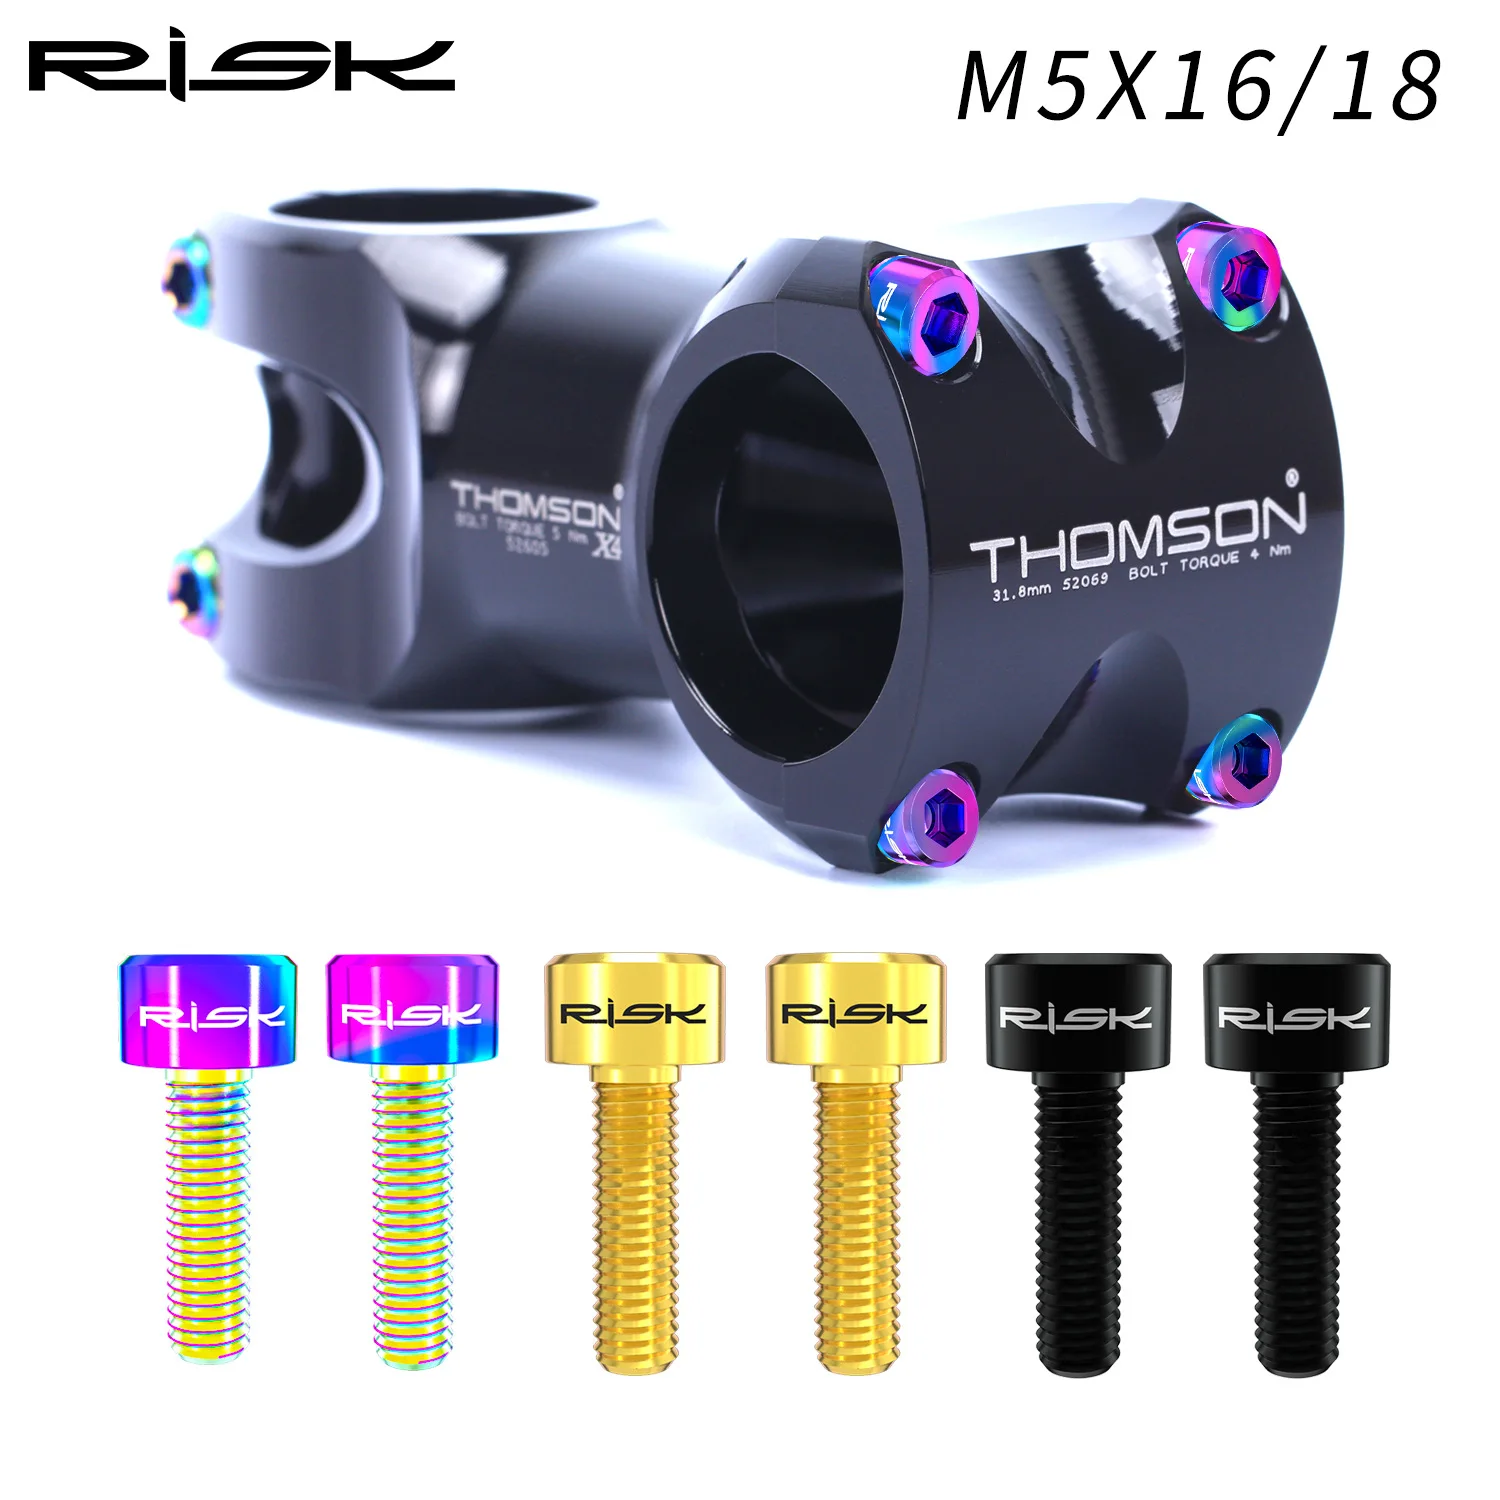 RISK-tornillos de fijación para manillar de bicicleta de montaña, M5 x 16/18mm, titanio Ti, M5 x 16mm, M5 x 18mm, 6 unidades/caja